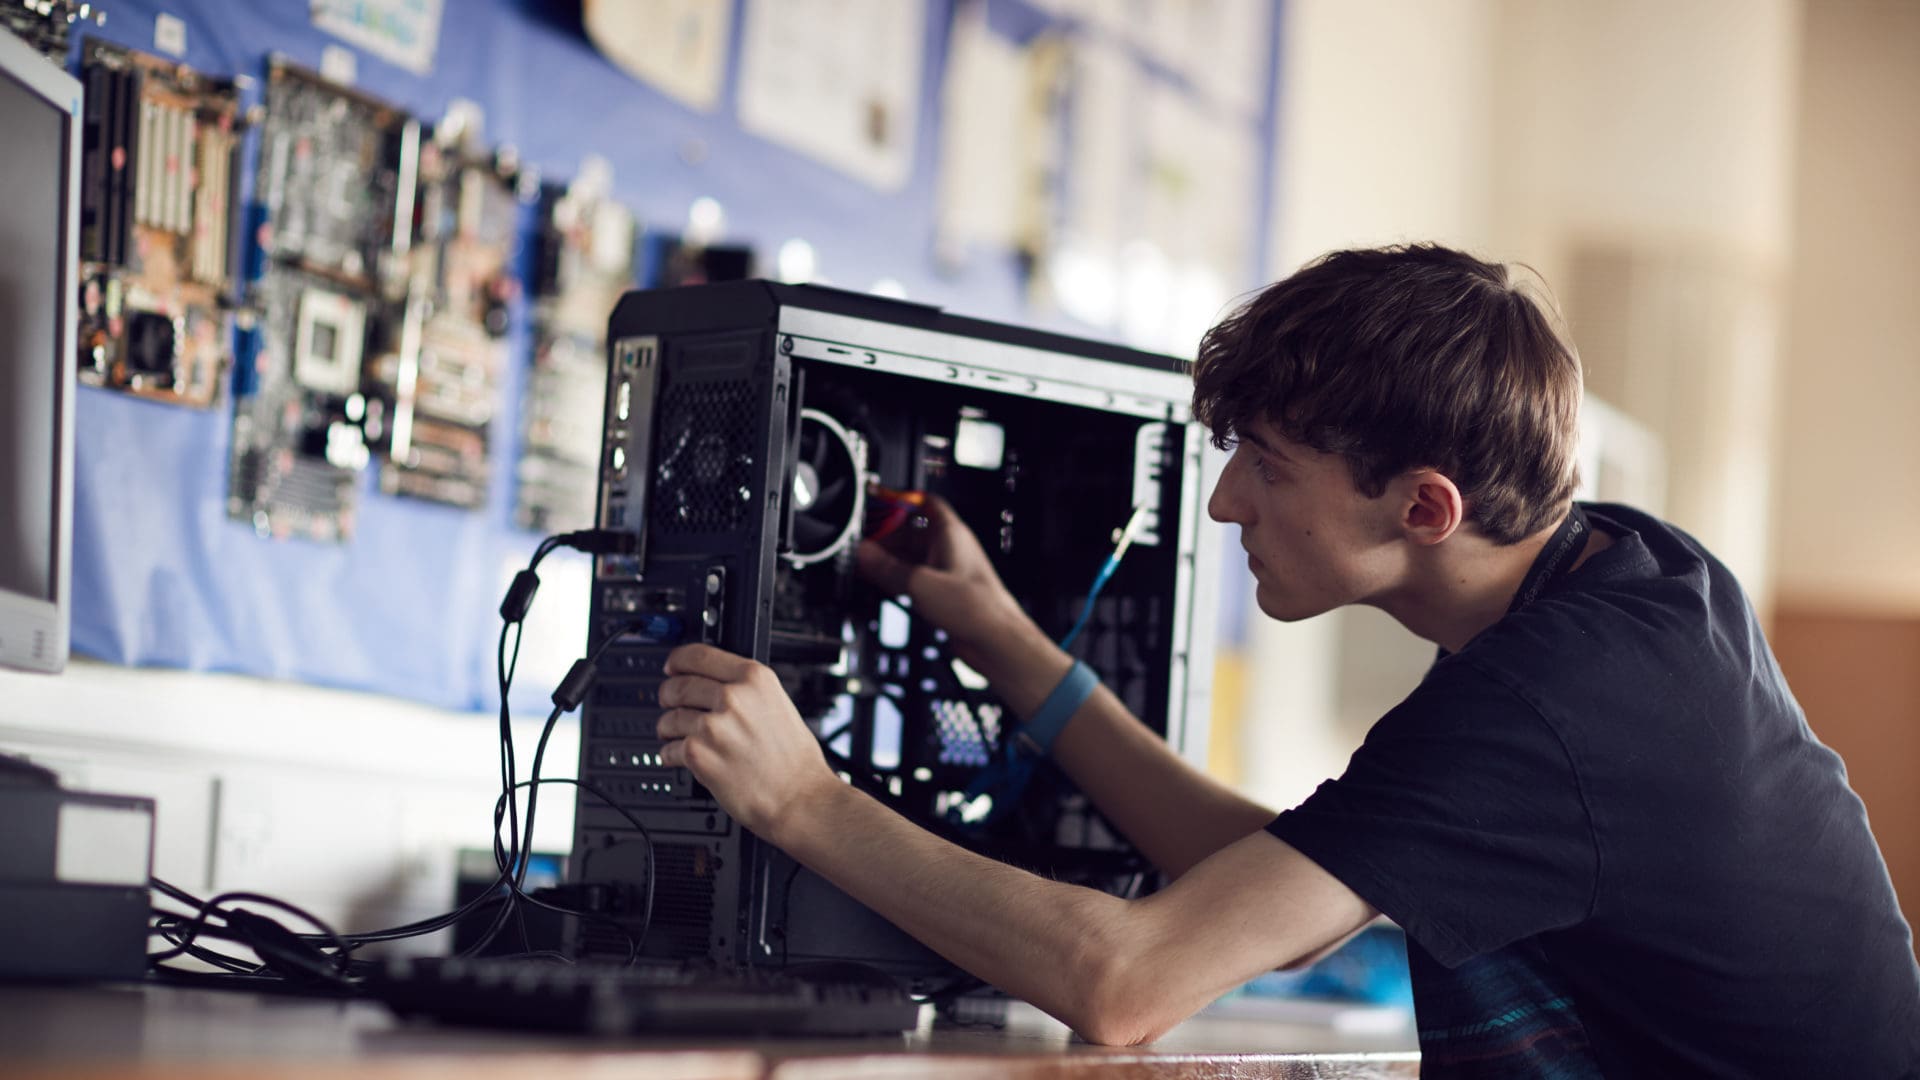 暗网福利 student focusing on fixing a computer on an IT course